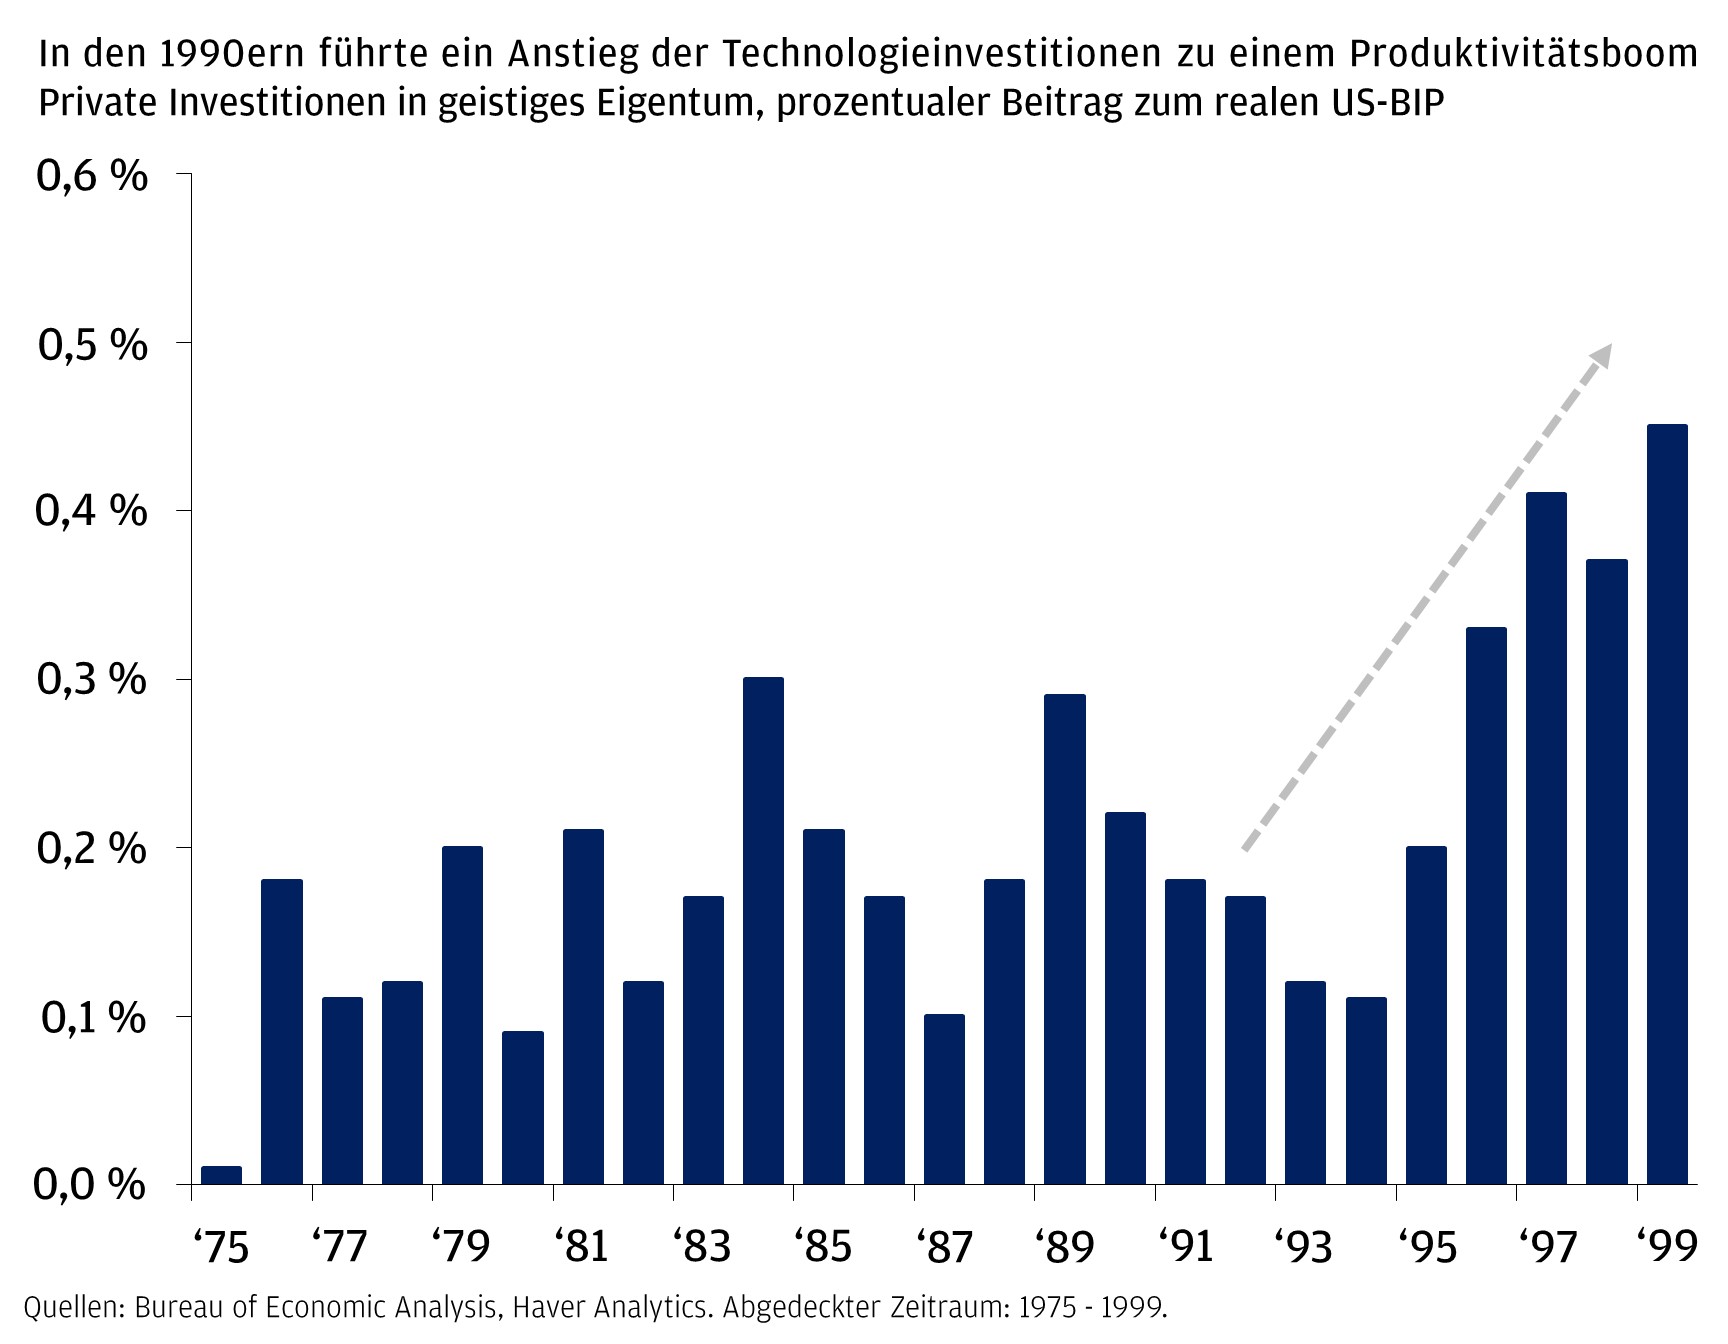 In den 1990ern führte ein Anstieg der Technologieinvestitionen zu einem Produktivitätsboom